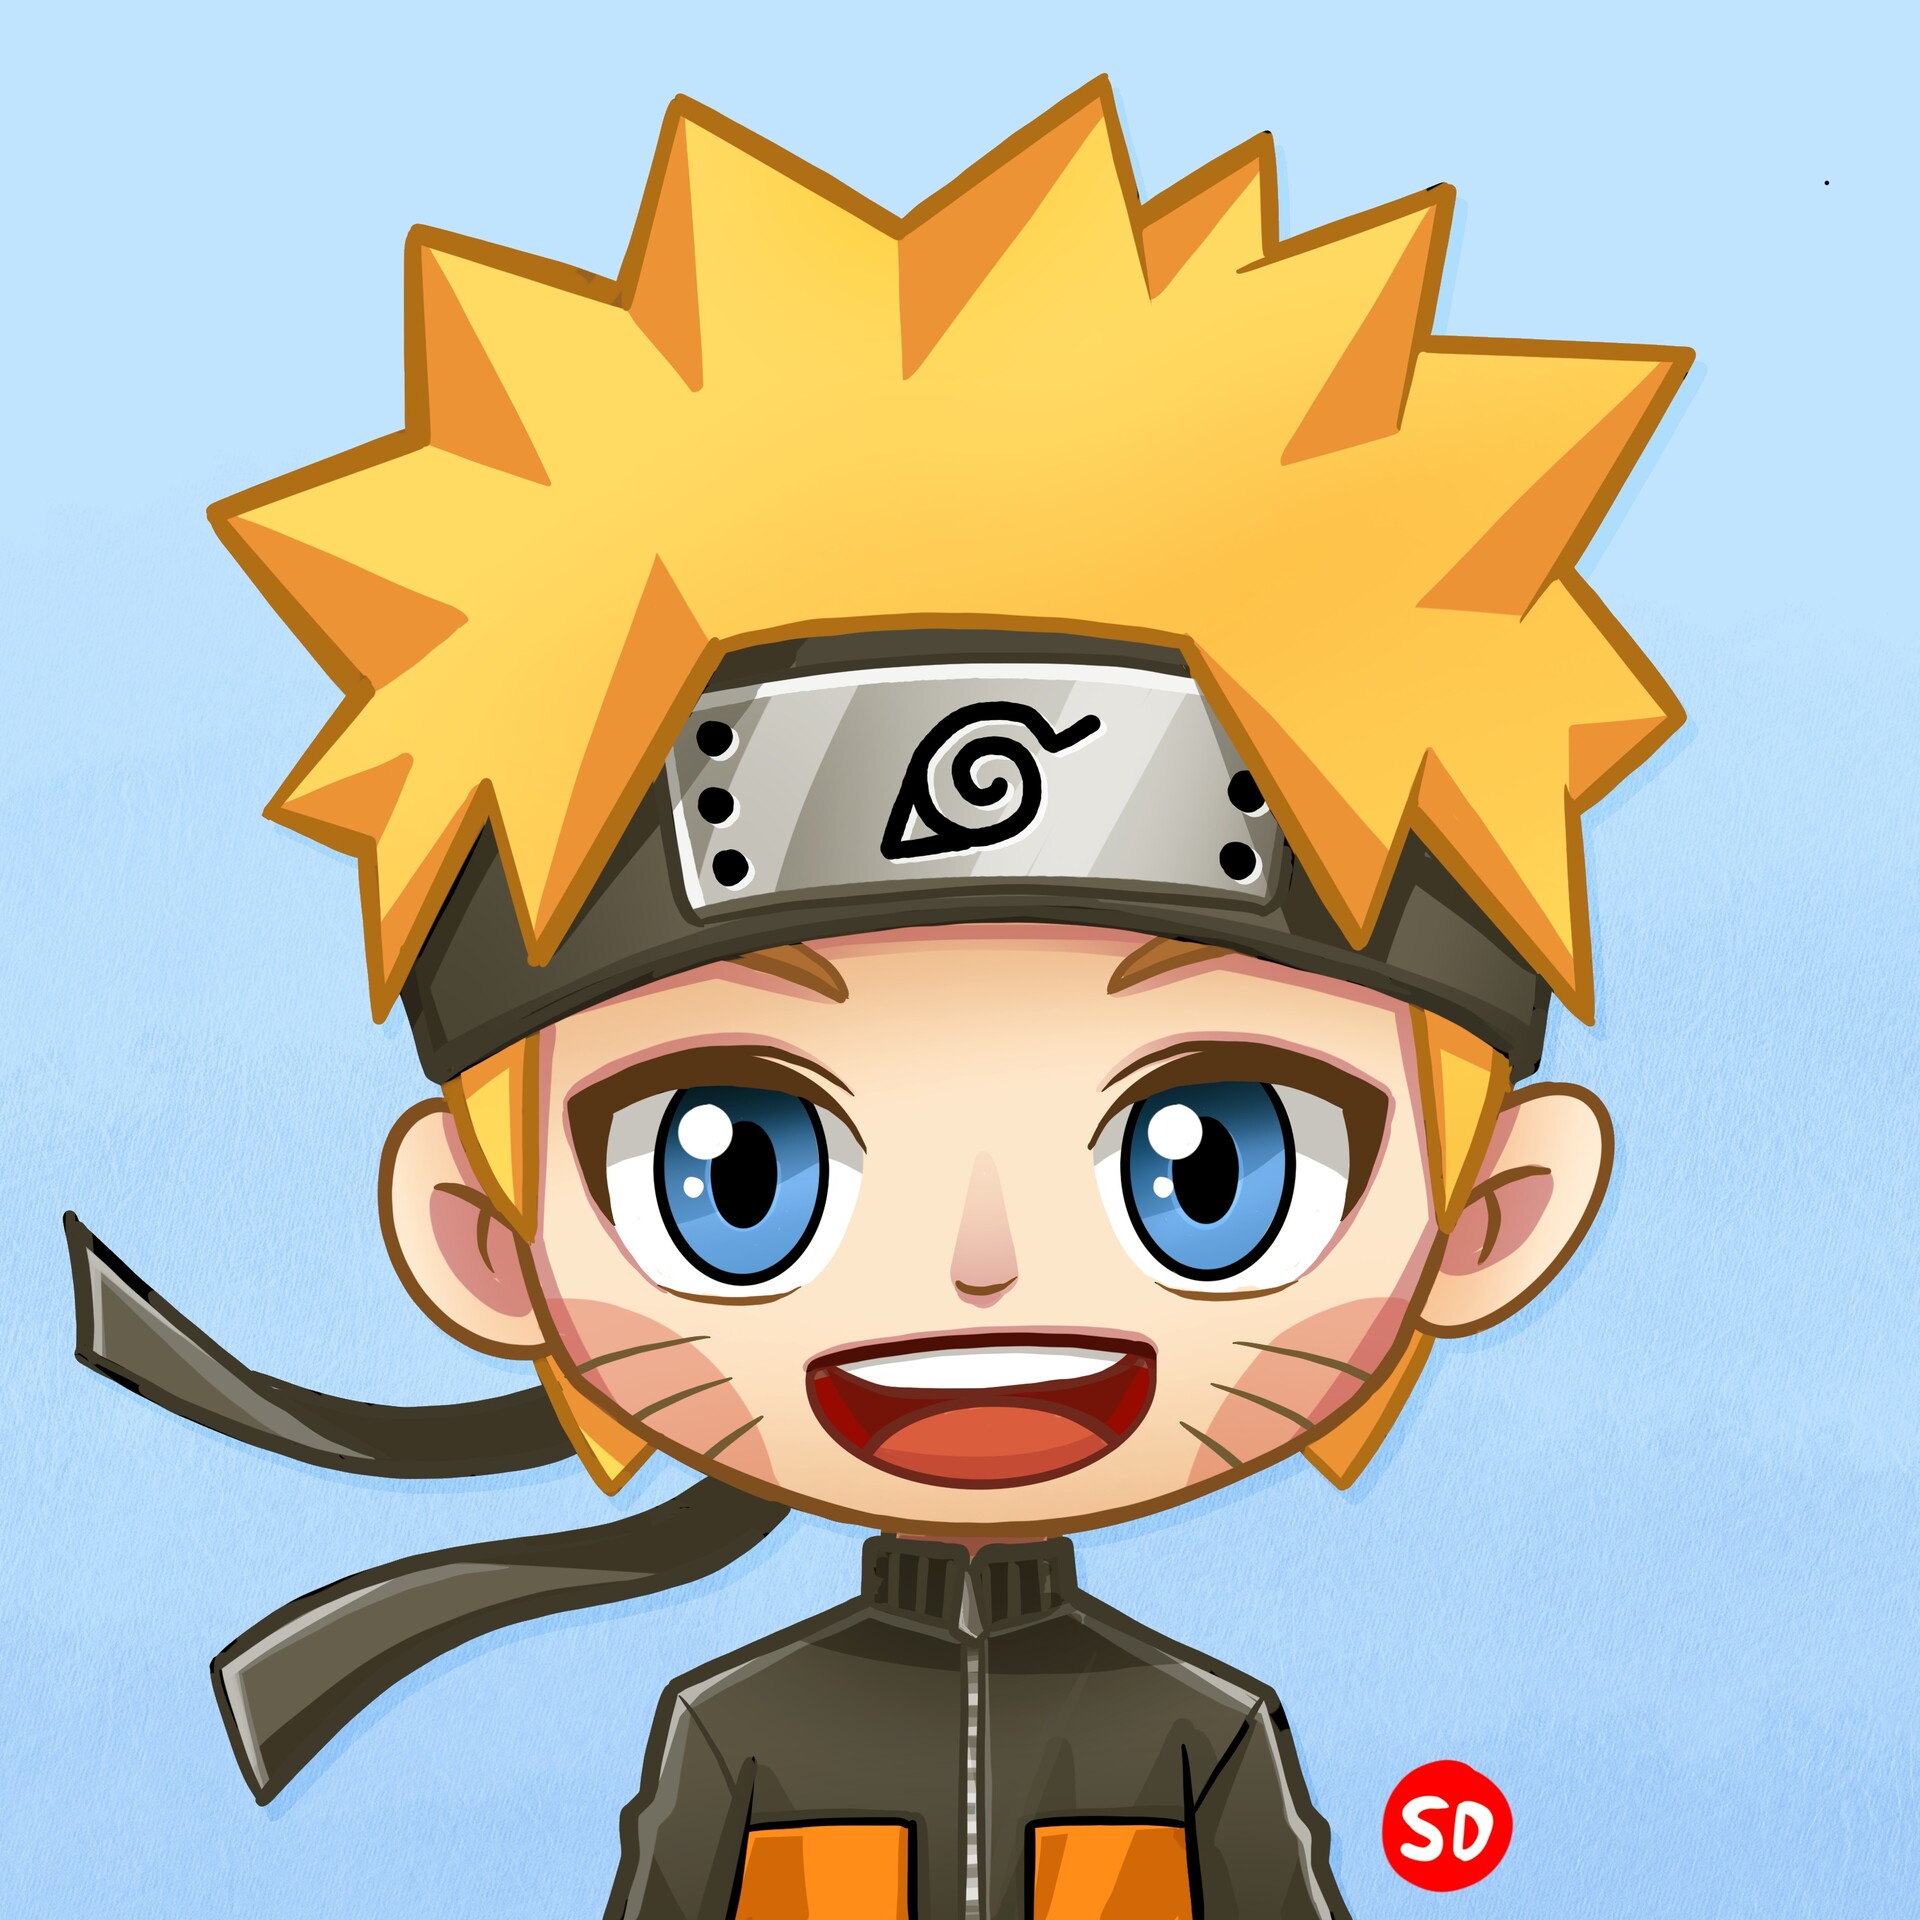 Naruto!  Kid naruto, Naruto uzumaki, Naruto sketch drawing